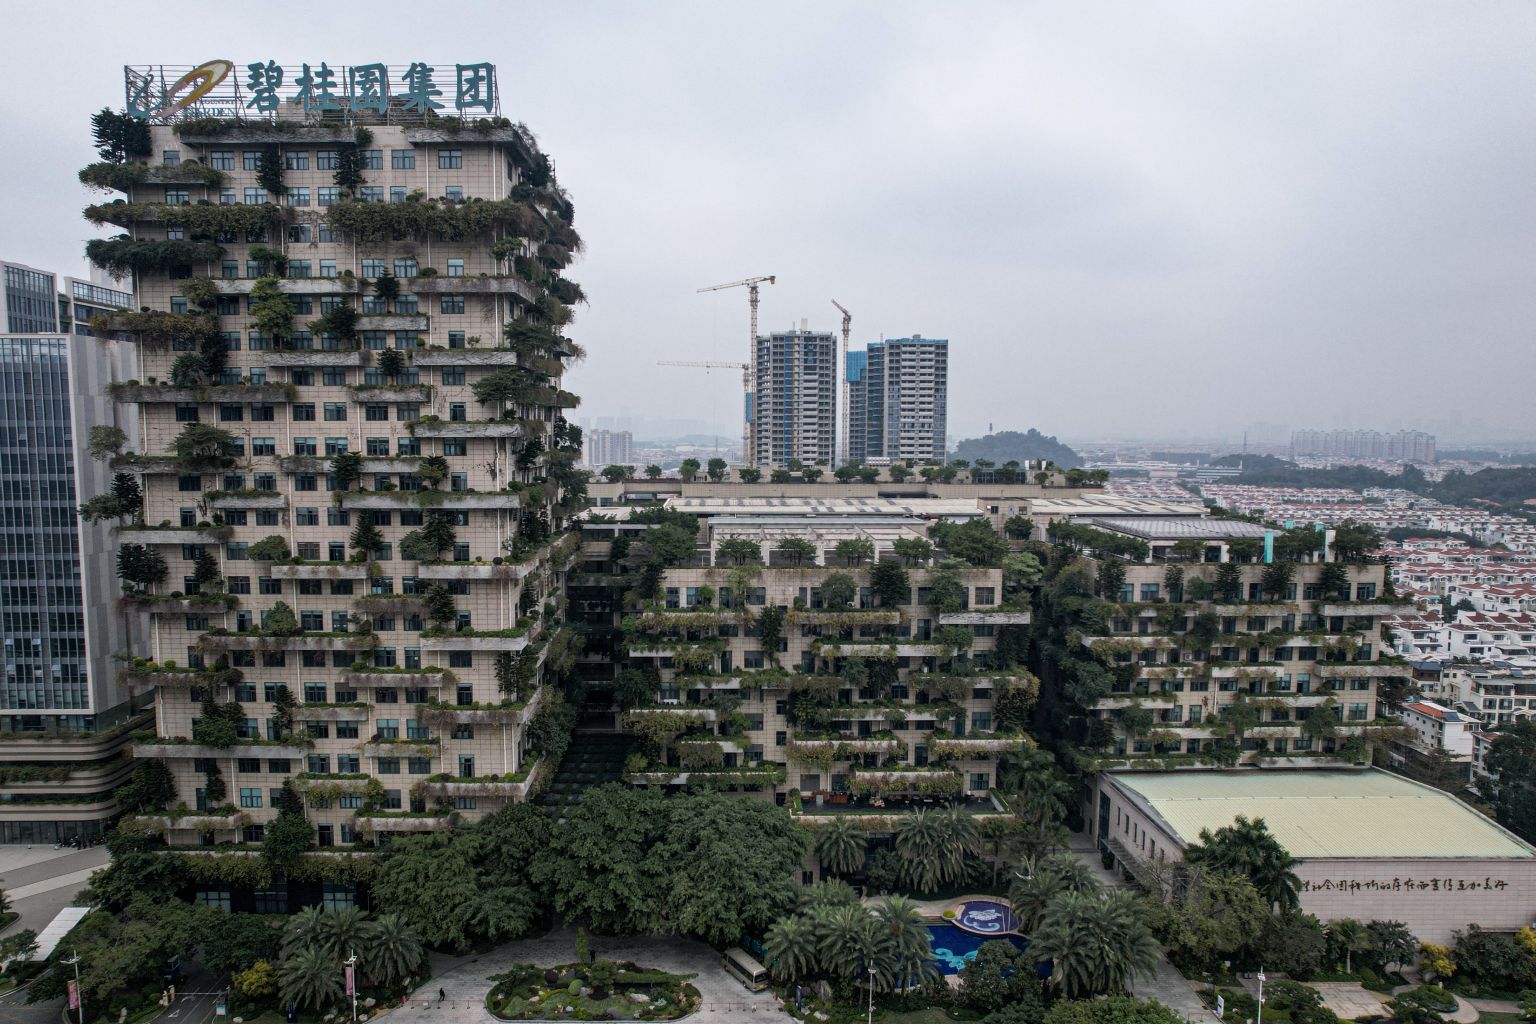 Immobilienkrise in China - Country Garden verschiebt Bilanz